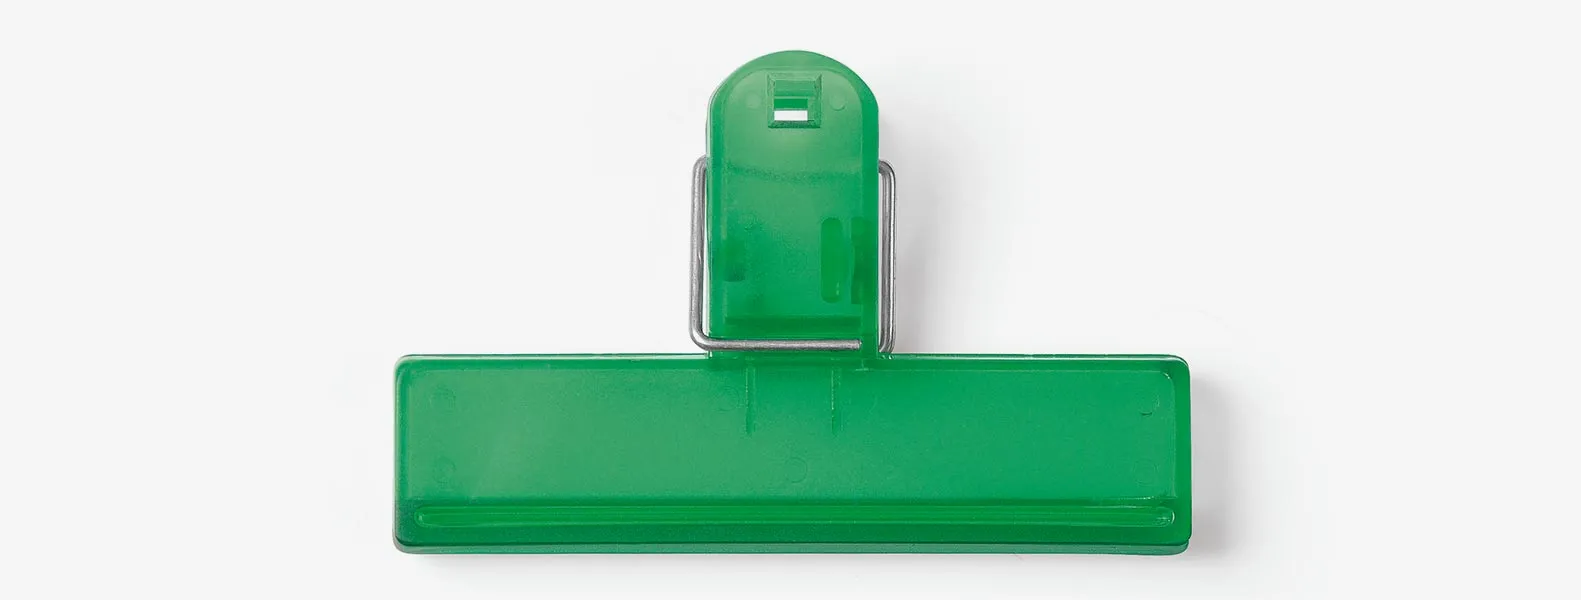 Confeccionado em poliestireno verde, possui tamanho compacto, mola em metal e um orifício na alça para pendurá-lo e facilitar seu uso. Disponível nas cores azul, fumê, vermelho e verde.